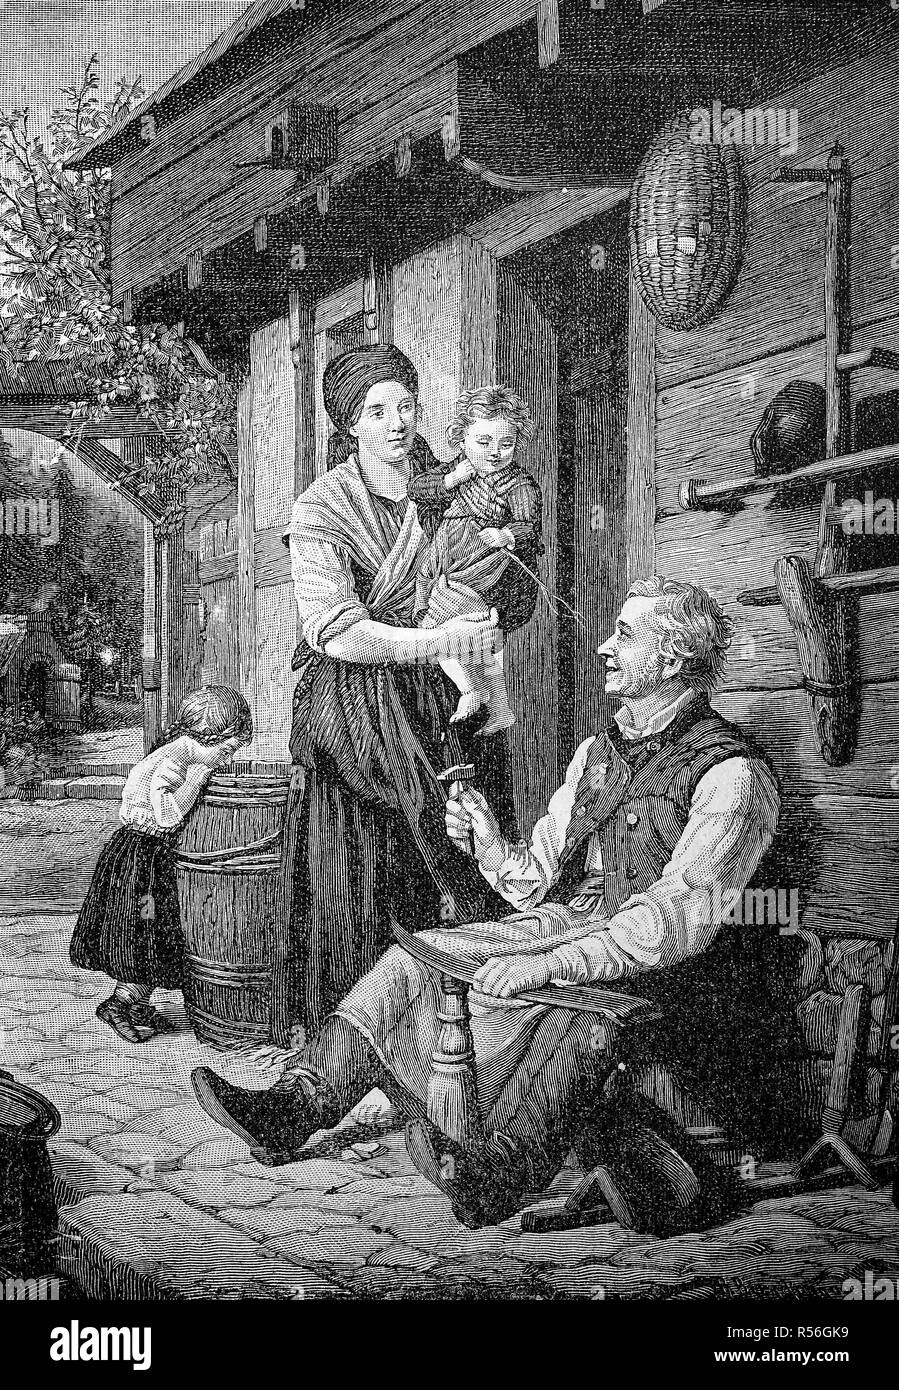 Fin de la journée de travail, l'agriculteur la faux d'affûtage, femme avec deux petits enfants, en face de la ferme, 1870, gravure sur bois Banque D'Images